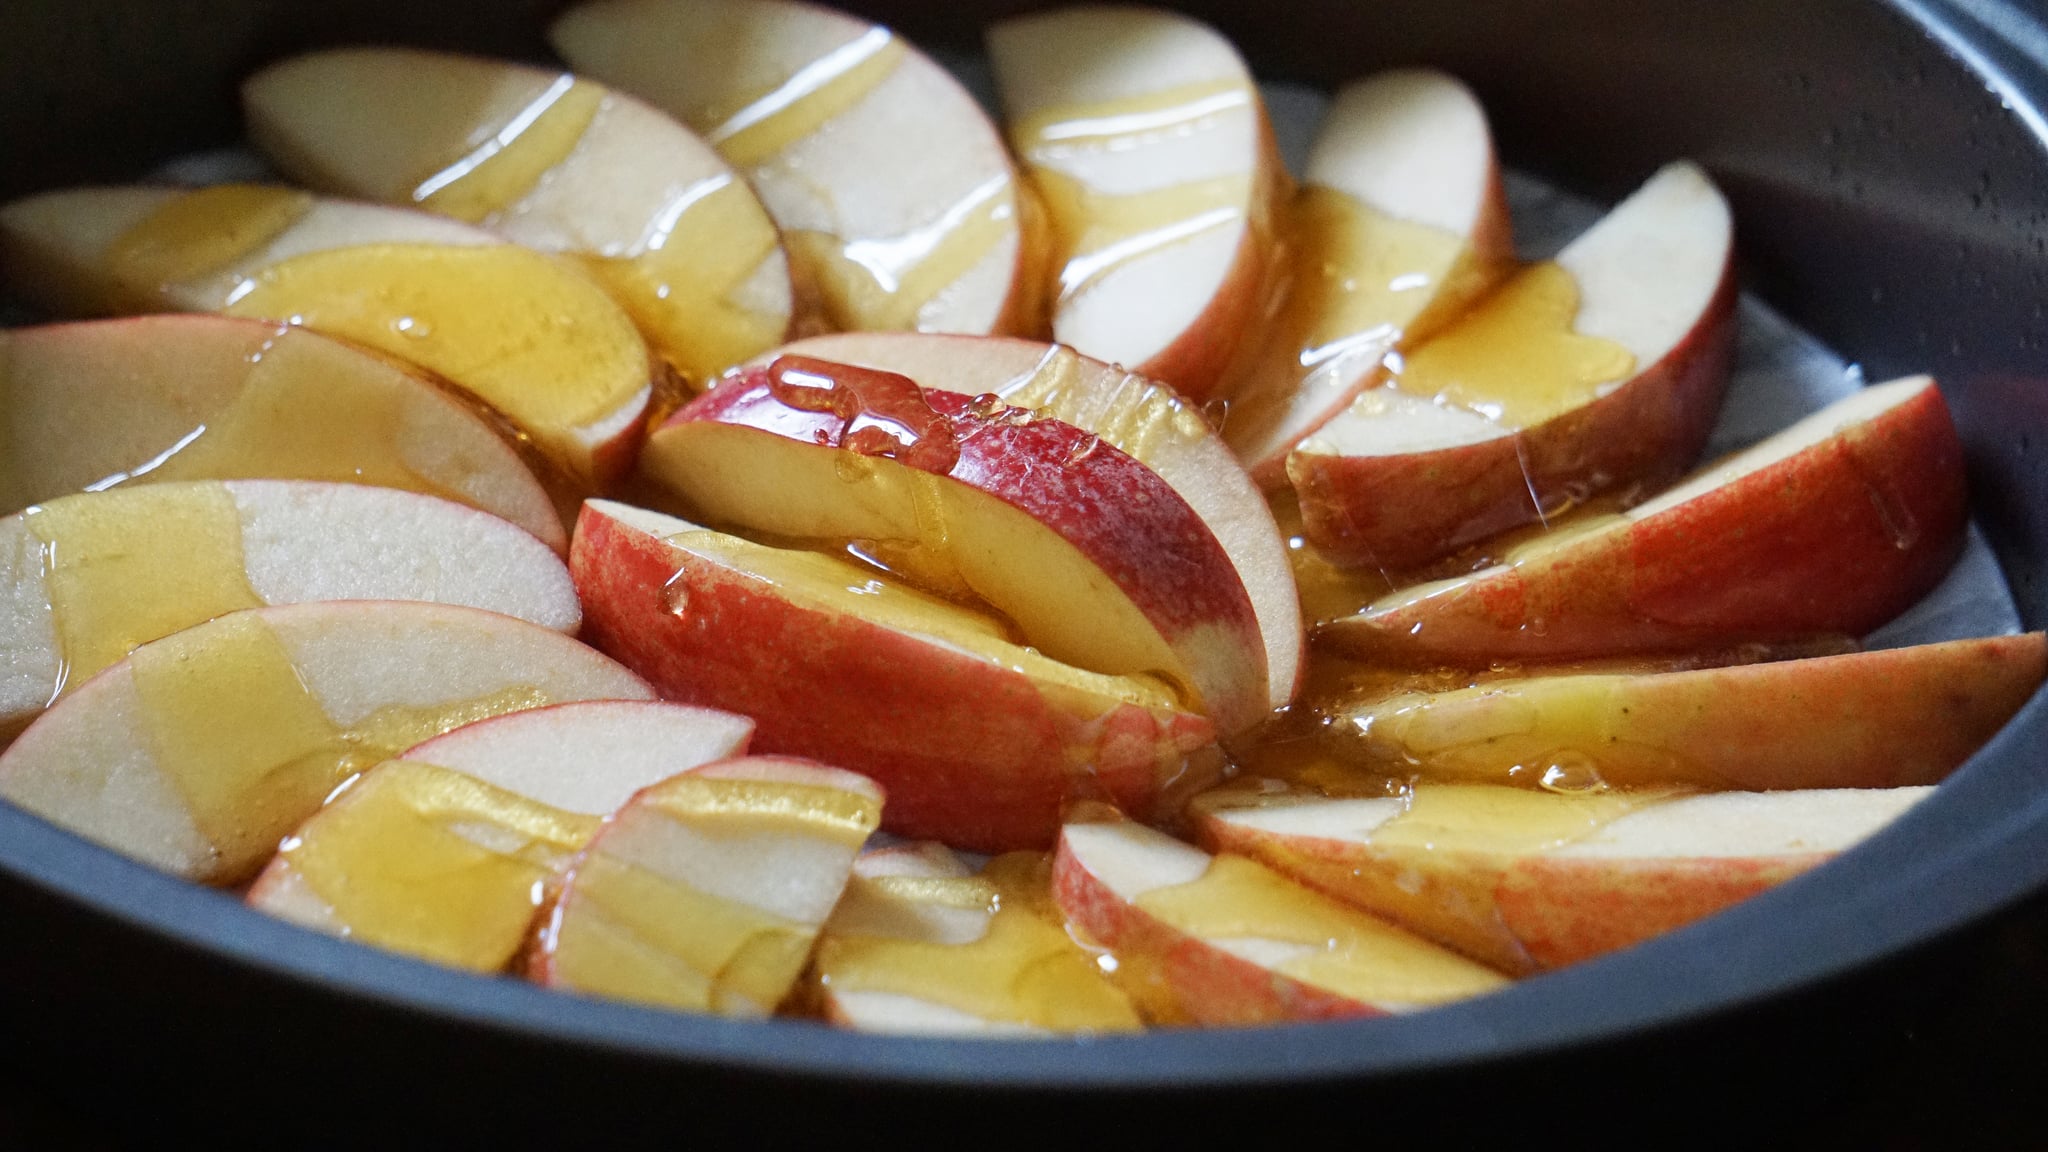 apple honey upside down cake for rosh hashanah dessert: drizzling apples in honey